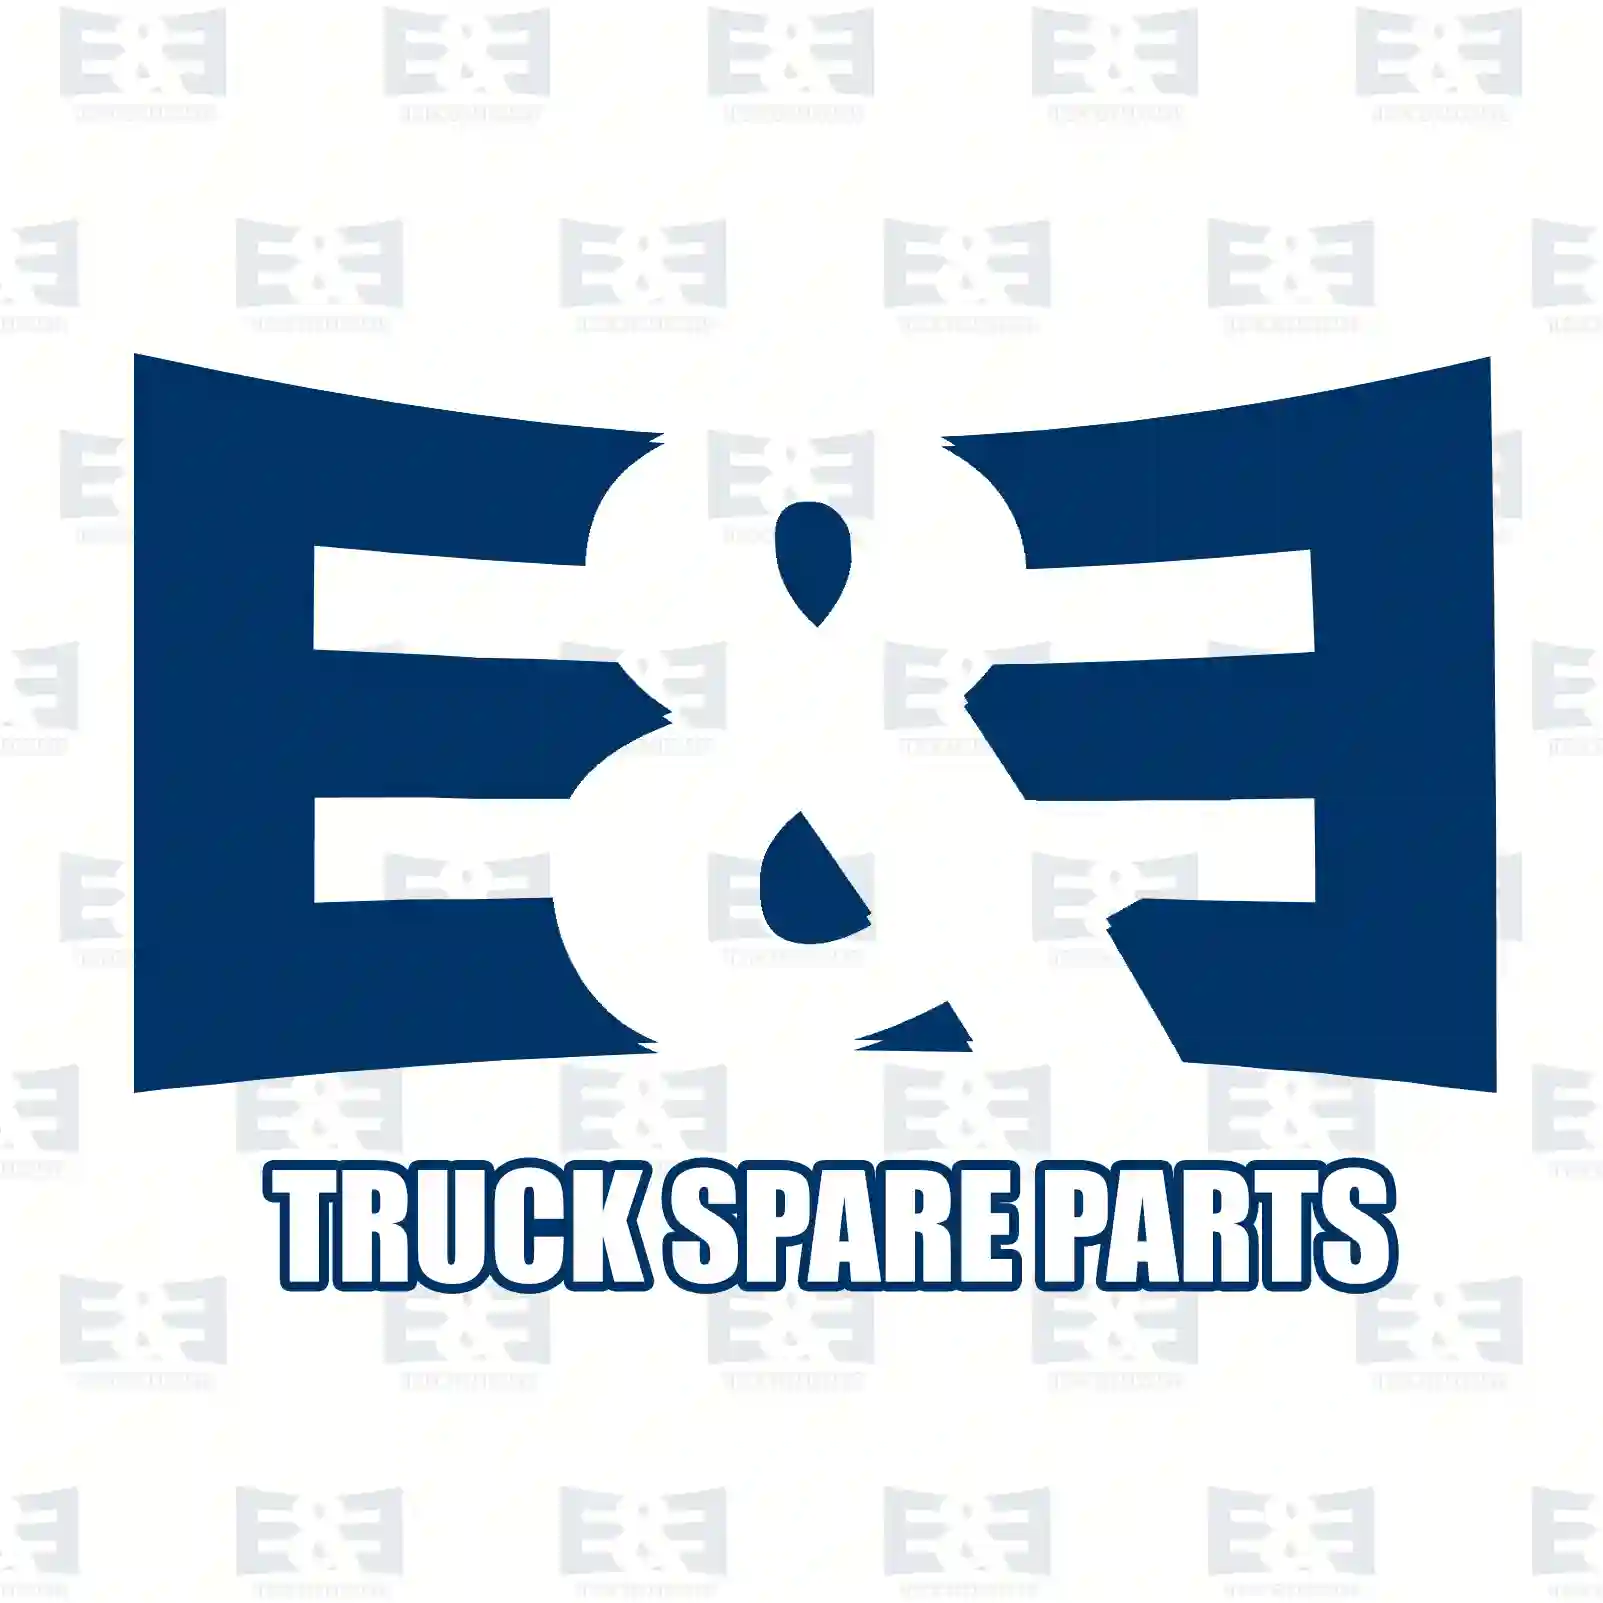 Cabin tilt cylinder, 2E2275670, 7482050280, , , , , , , , ||  2E2275670 E&E Truck Spare Parts | Truck Spare Parts, Auotomotive Spare Parts Cabin tilt cylinder, 2E2275670, 7482050280, , , , , , , , ||  2E2275670 E&E Truck Spare Parts | Truck Spare Parts, Auotomotive Spare Parts